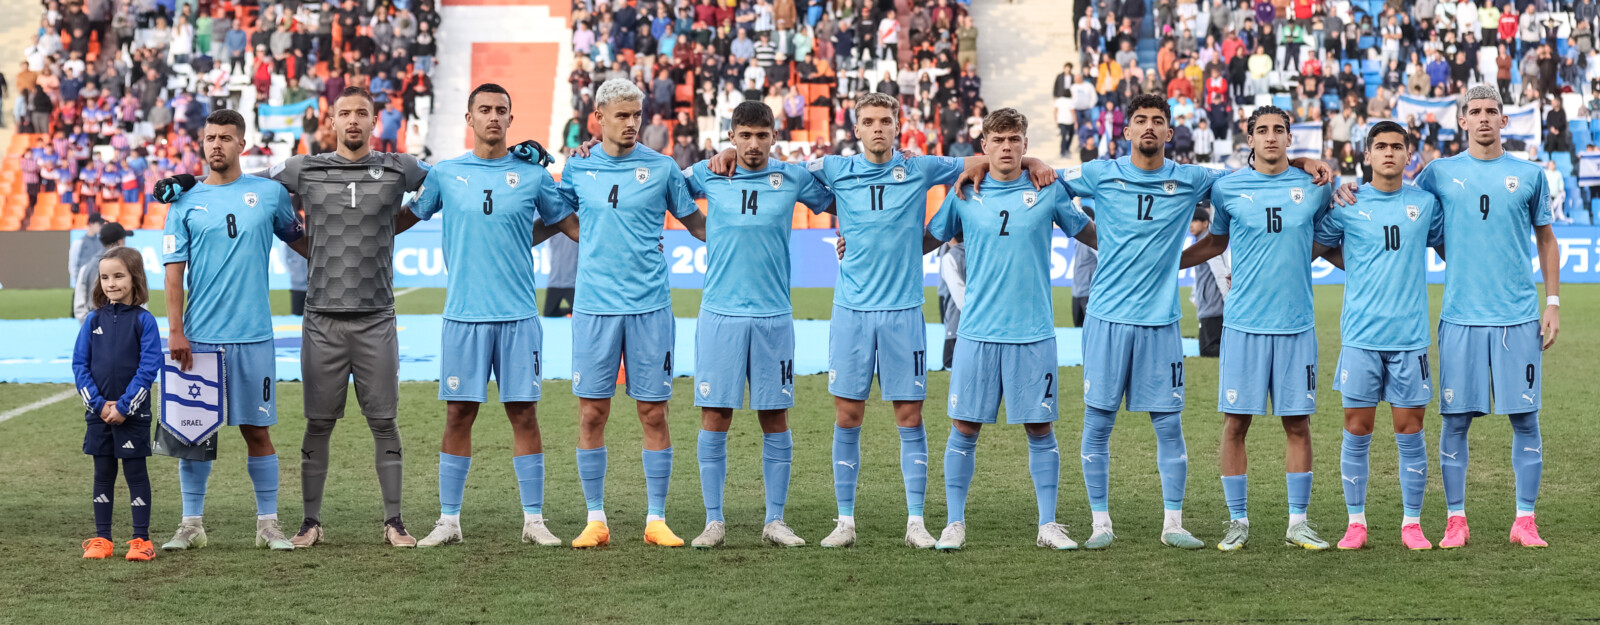 שחקני נבחרת ישראל עד גיל 20 מול אוזבקיסטן (אסי קיפר, באדיבות ההתאחדות לכדורגל בישראל)